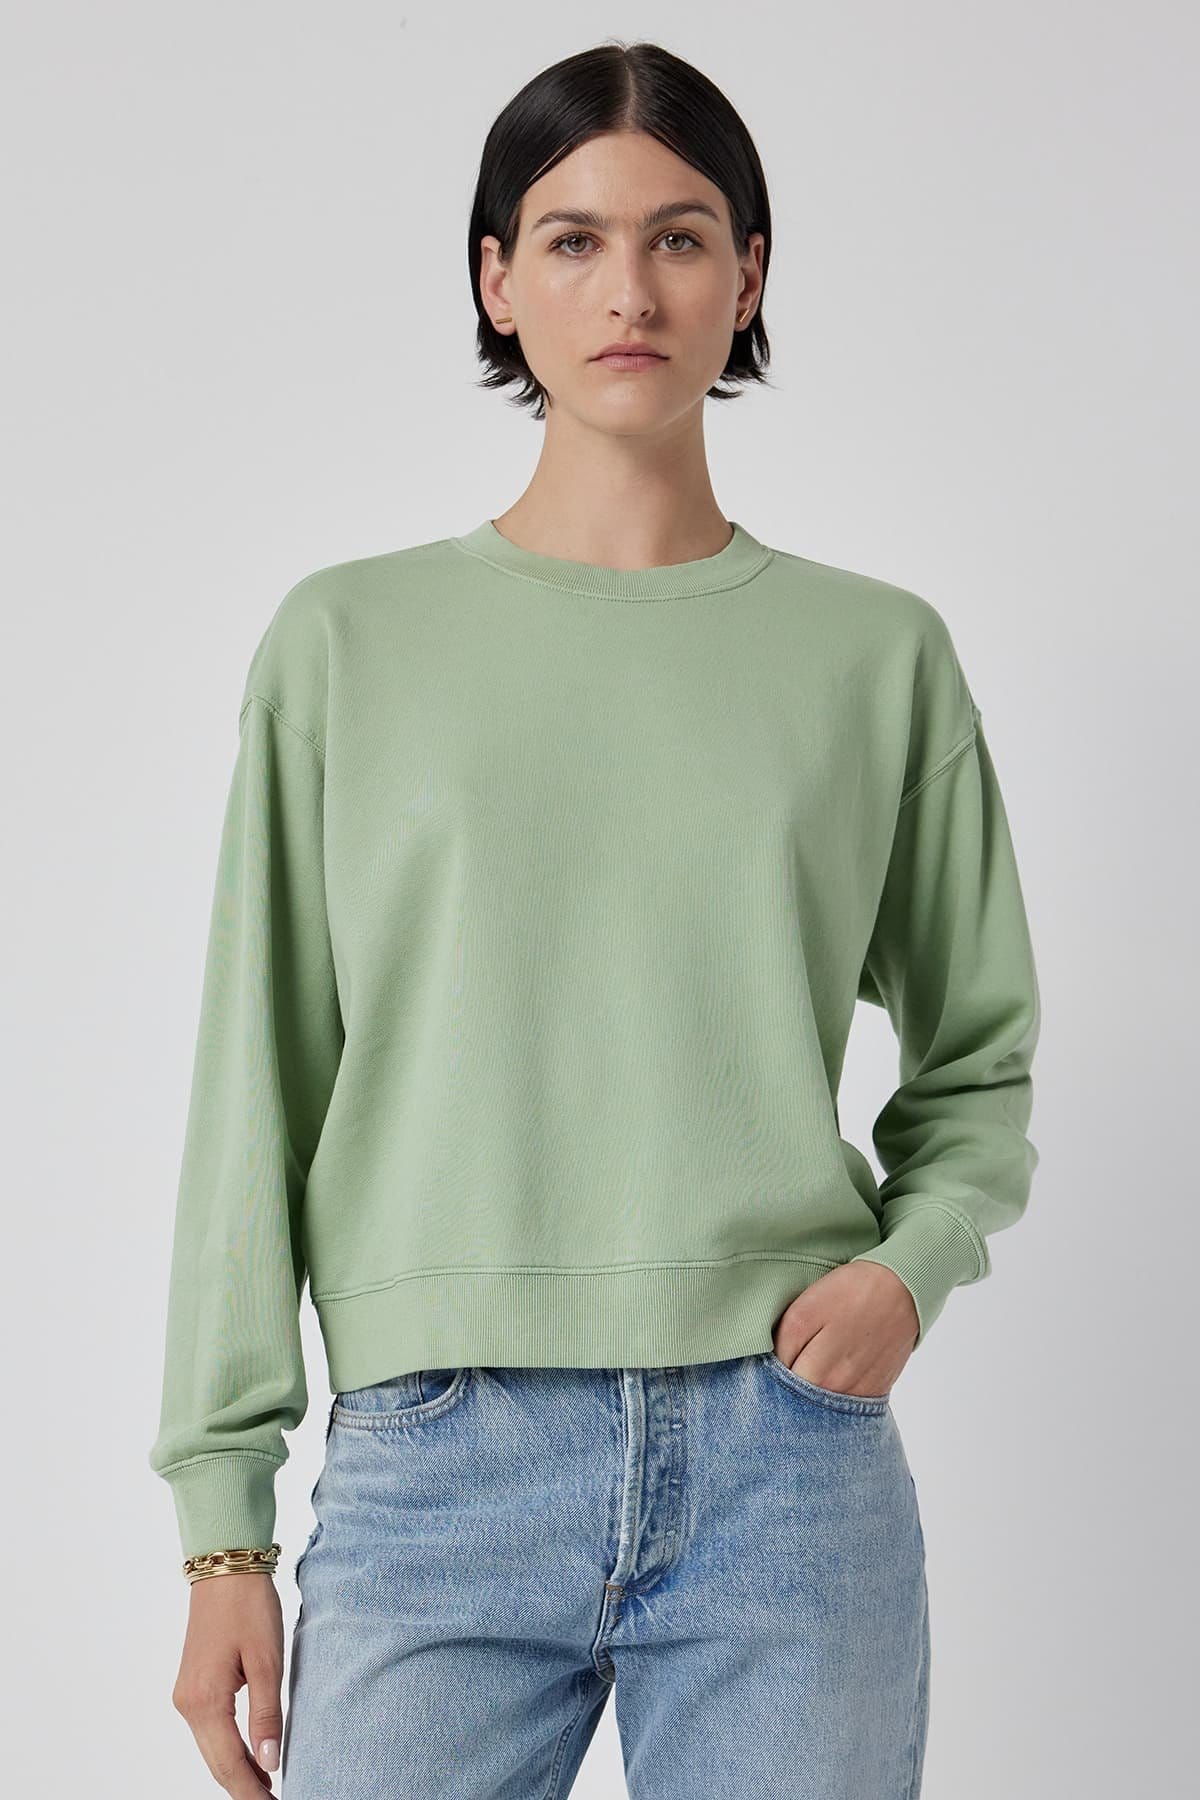 Model wearing the Ynez Sweatshirt